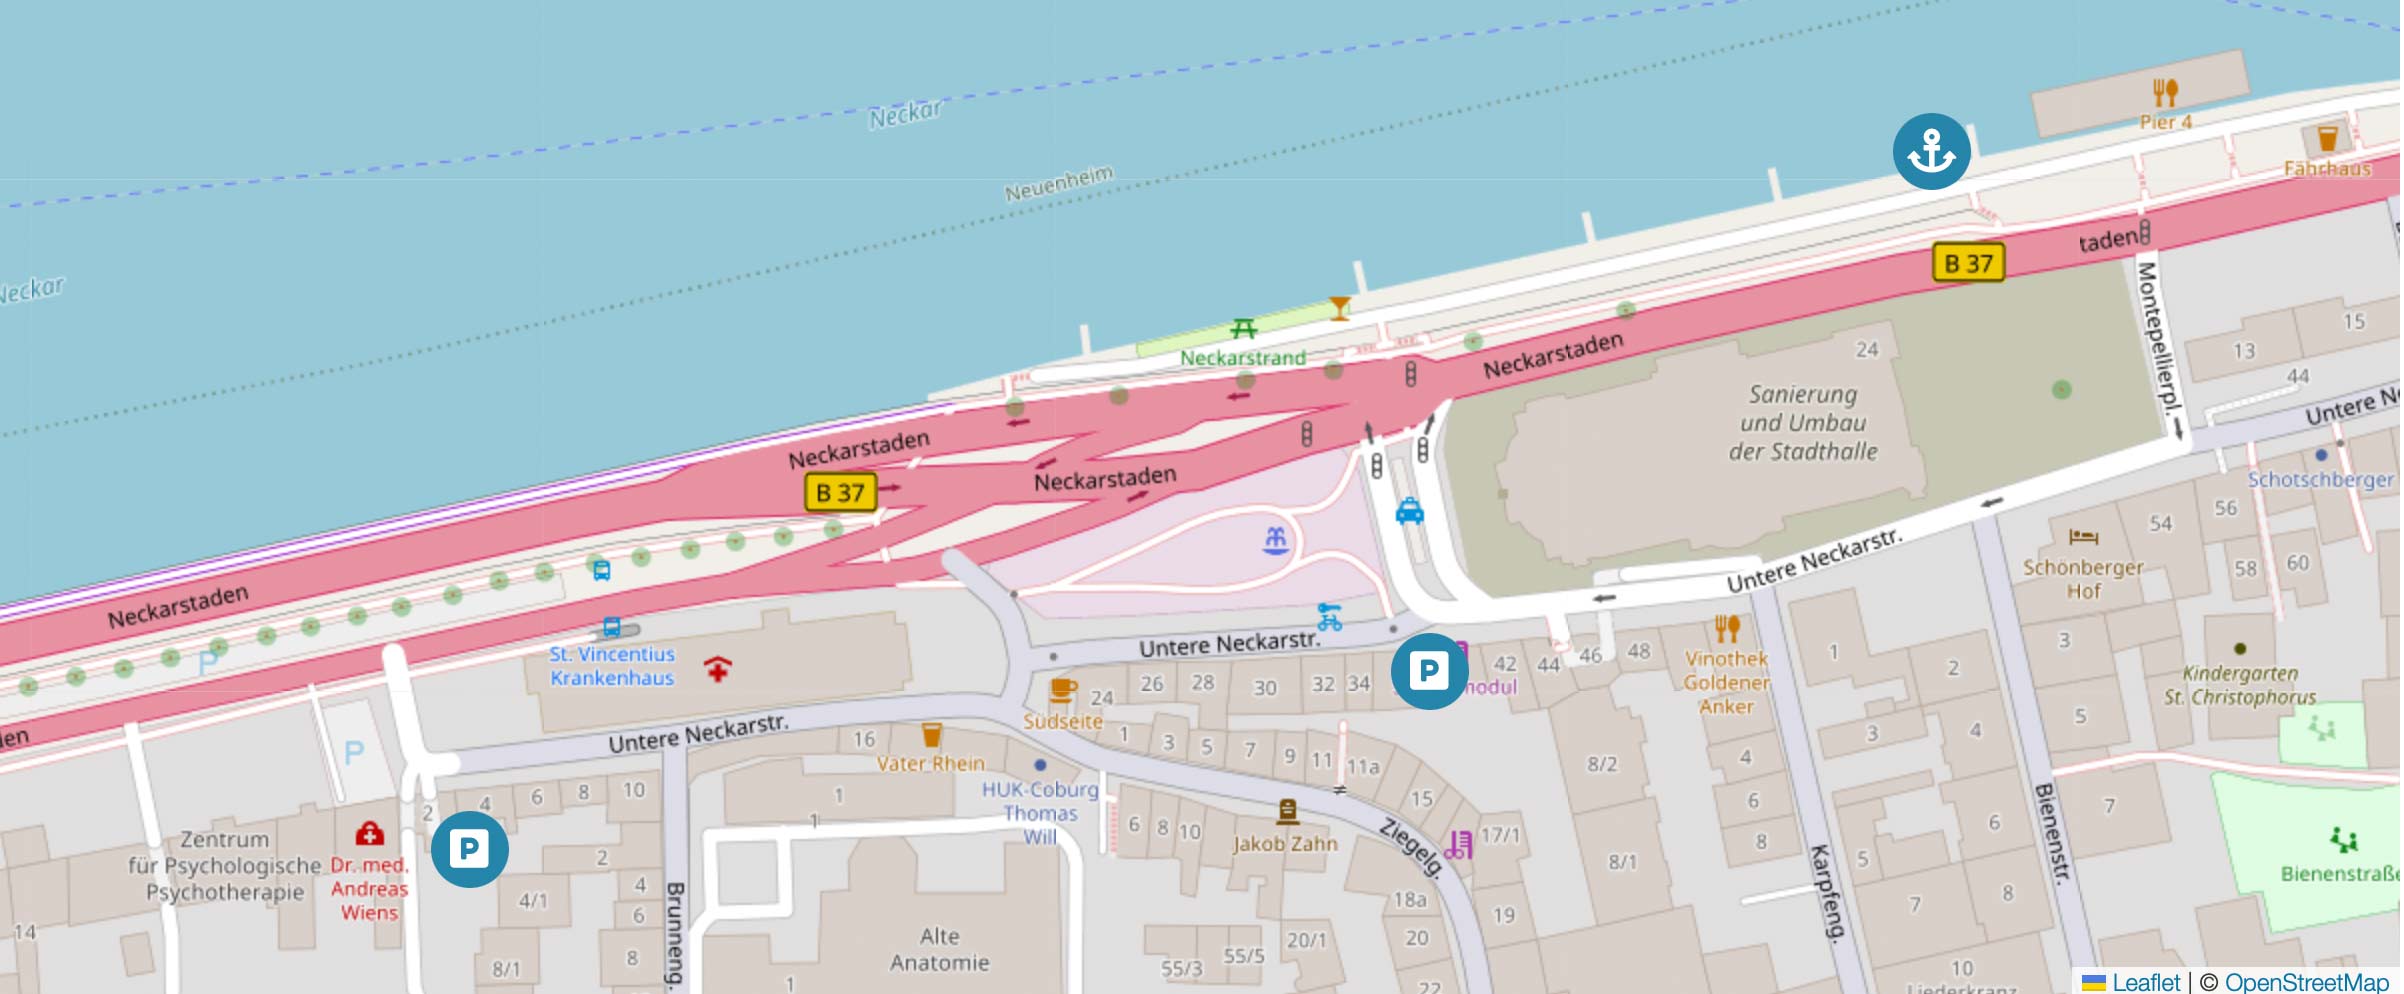 Die Karte zeigt die Parkmöglichkeiten vor einer Bootstour von Riverboat in Heidelberg laut FAQ